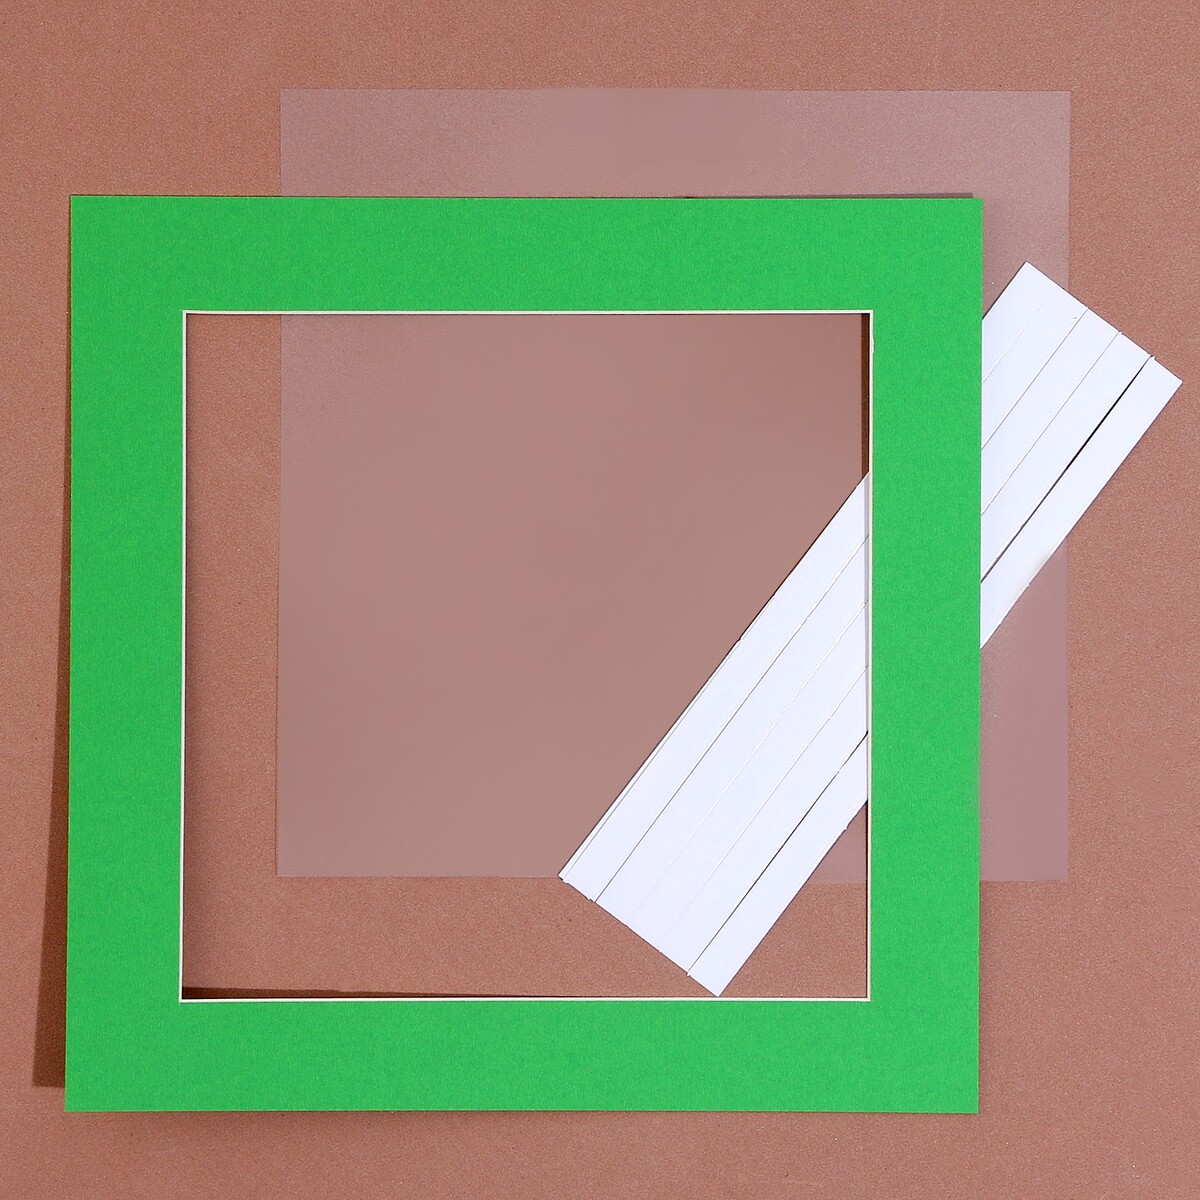 Паспарту размер рамки 24 × 24 см, прозрачный лист, клейкая лента, цвет зеленый паспарту размер рамки 35 × 26 см прозрачный лист клейкая лента зеленый